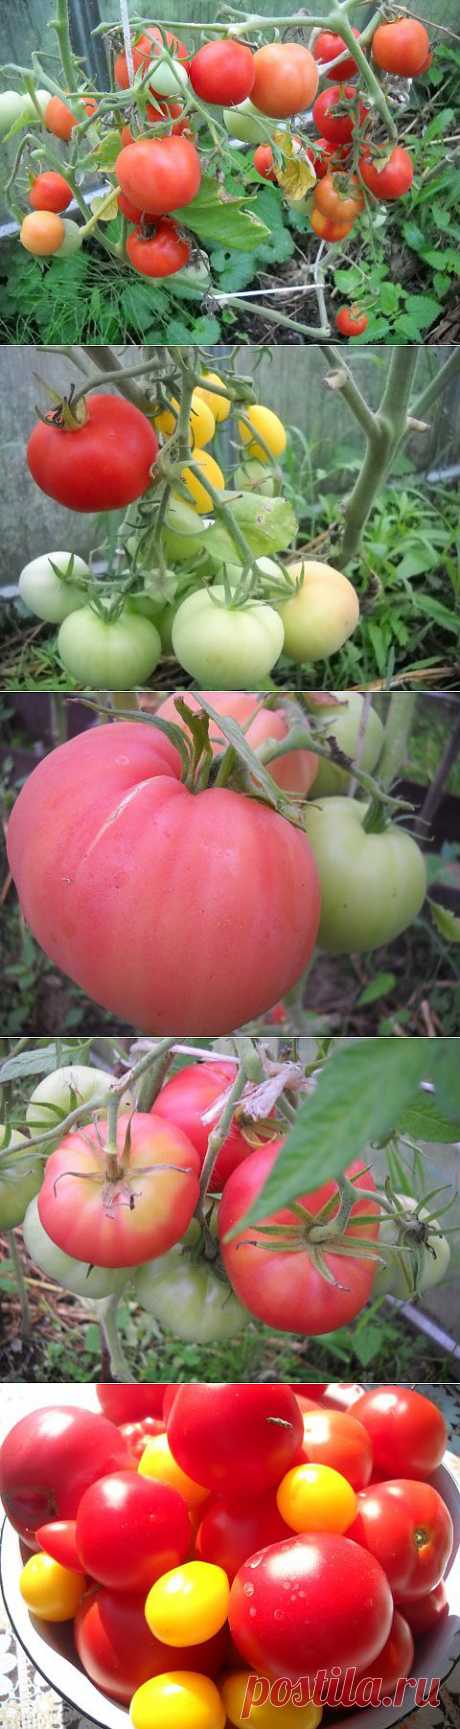 Про любимые помидоры!